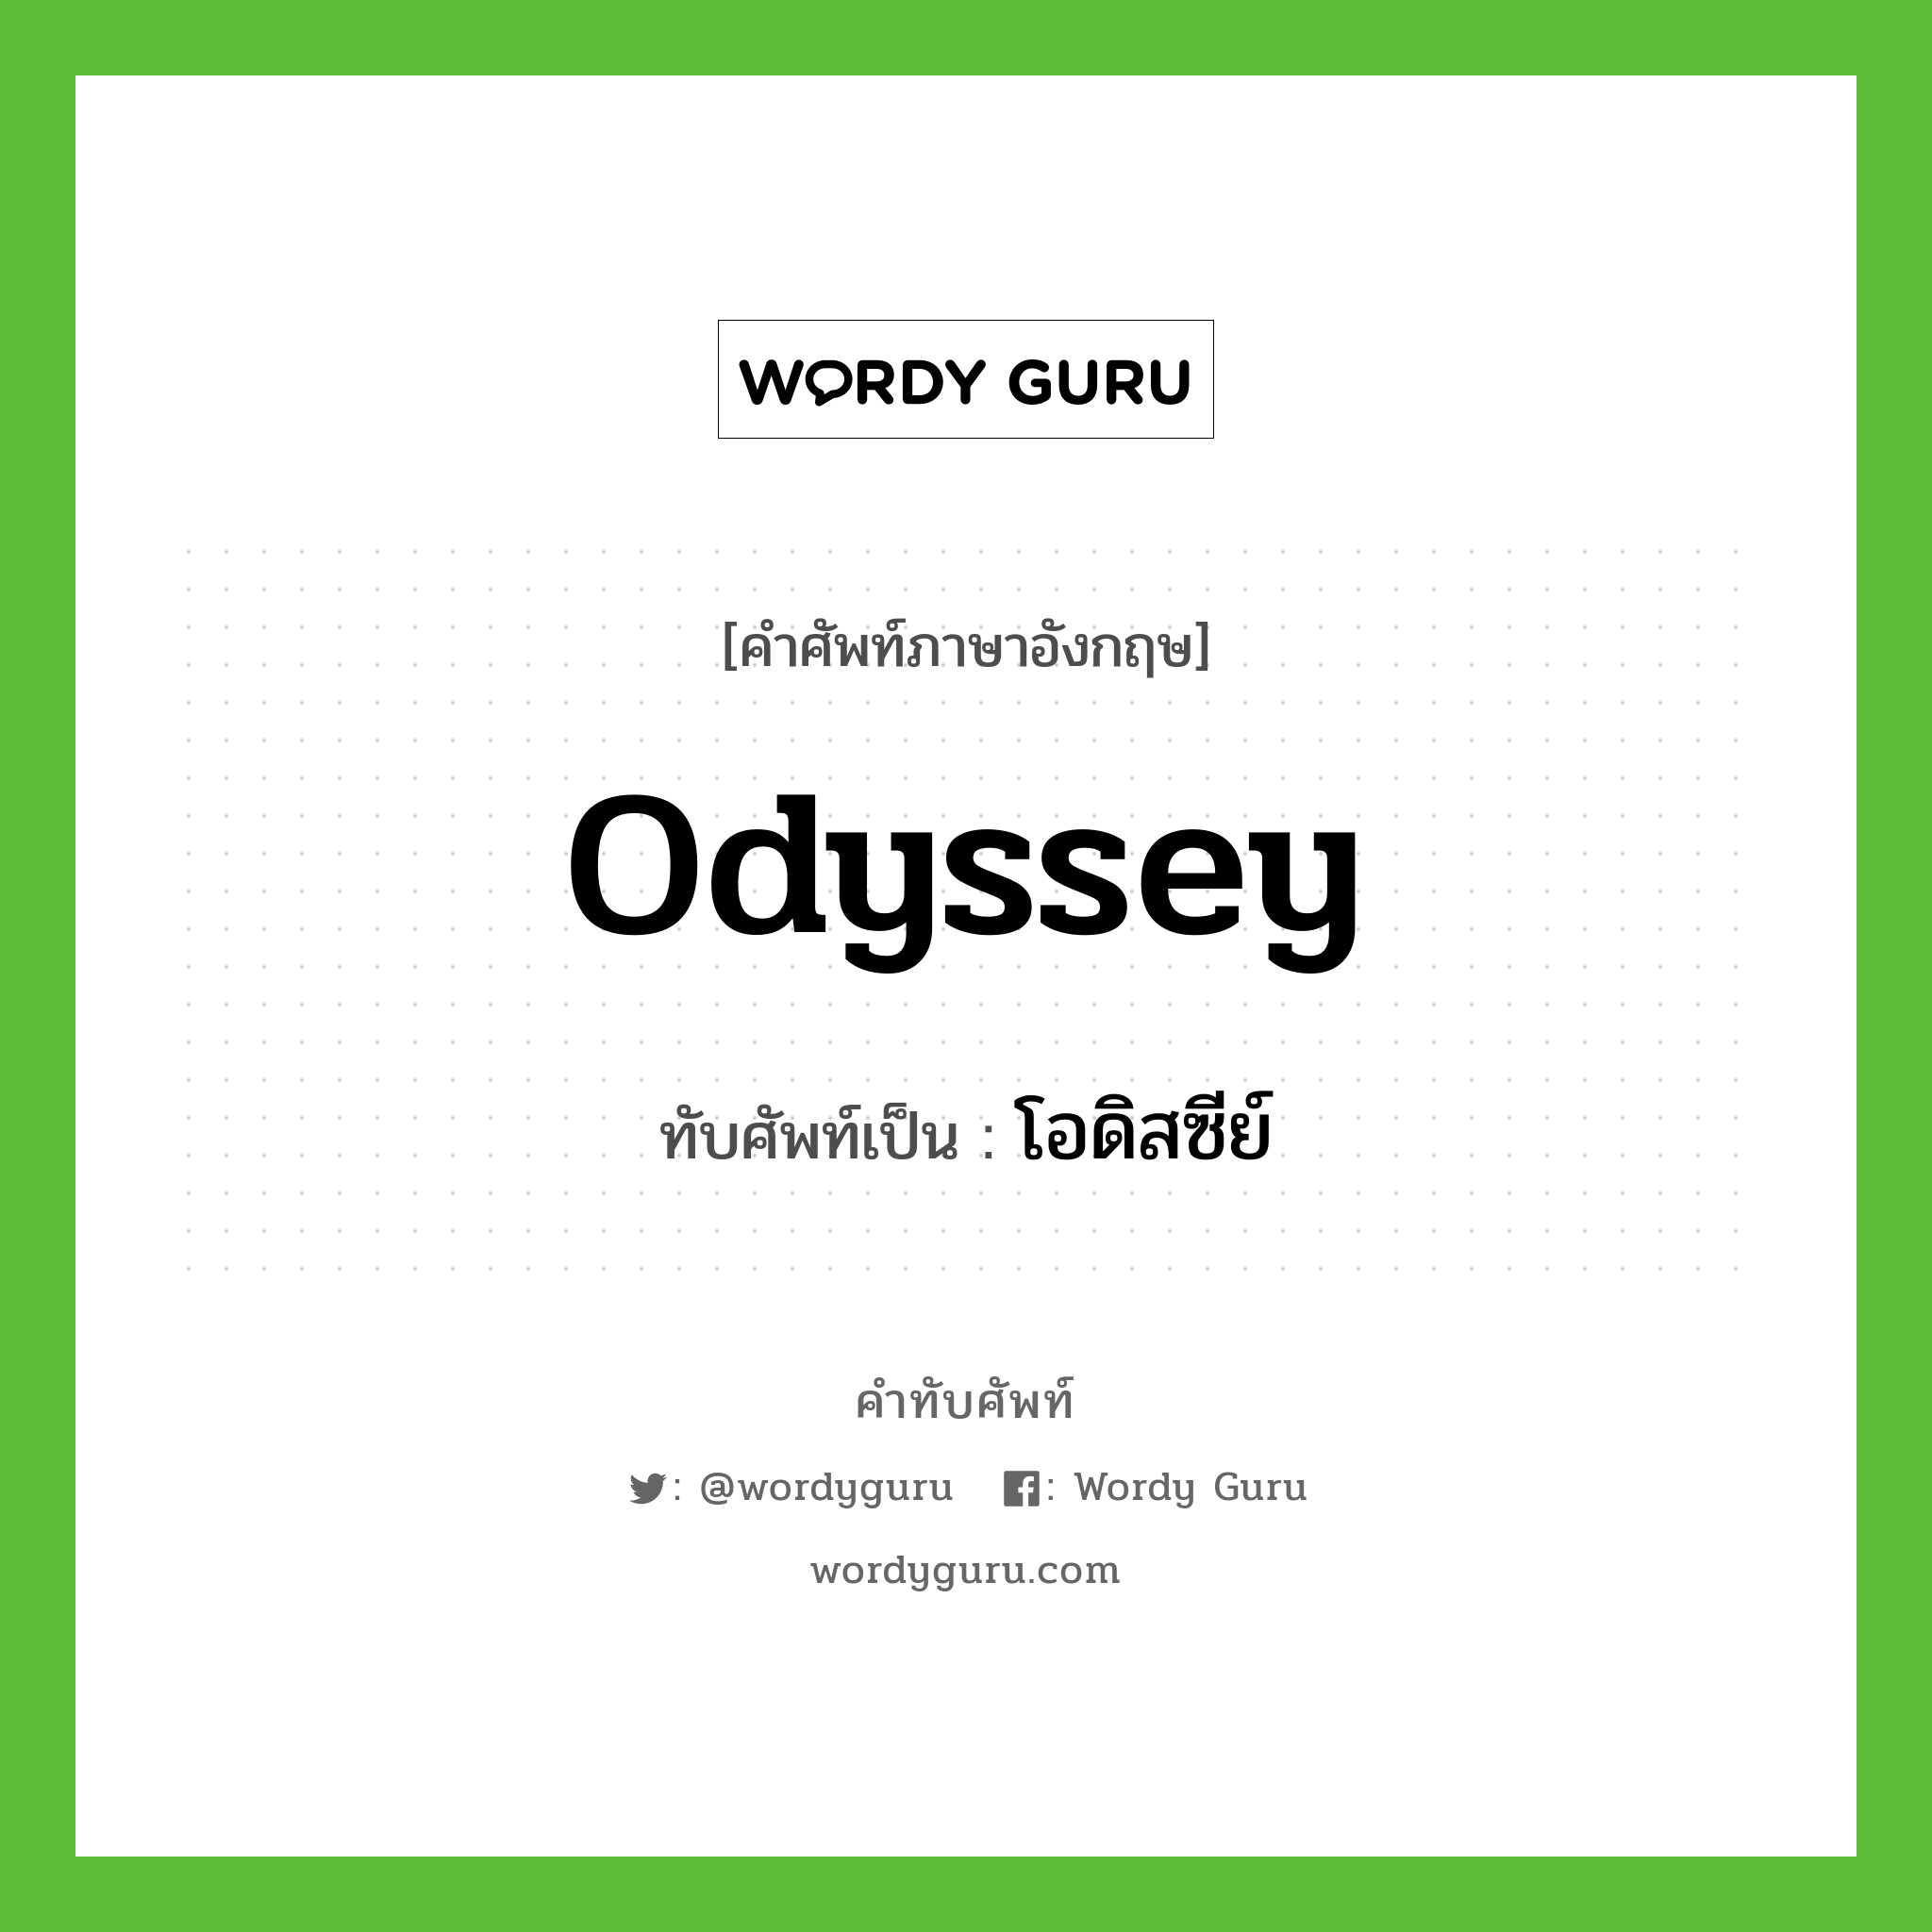 โอดิสซีย์ เขียนอย่างไร?, คำศัพท์ภาษาอังกฤษ โอดิสซีย์ ทับศัพท์เป็น Odyssey